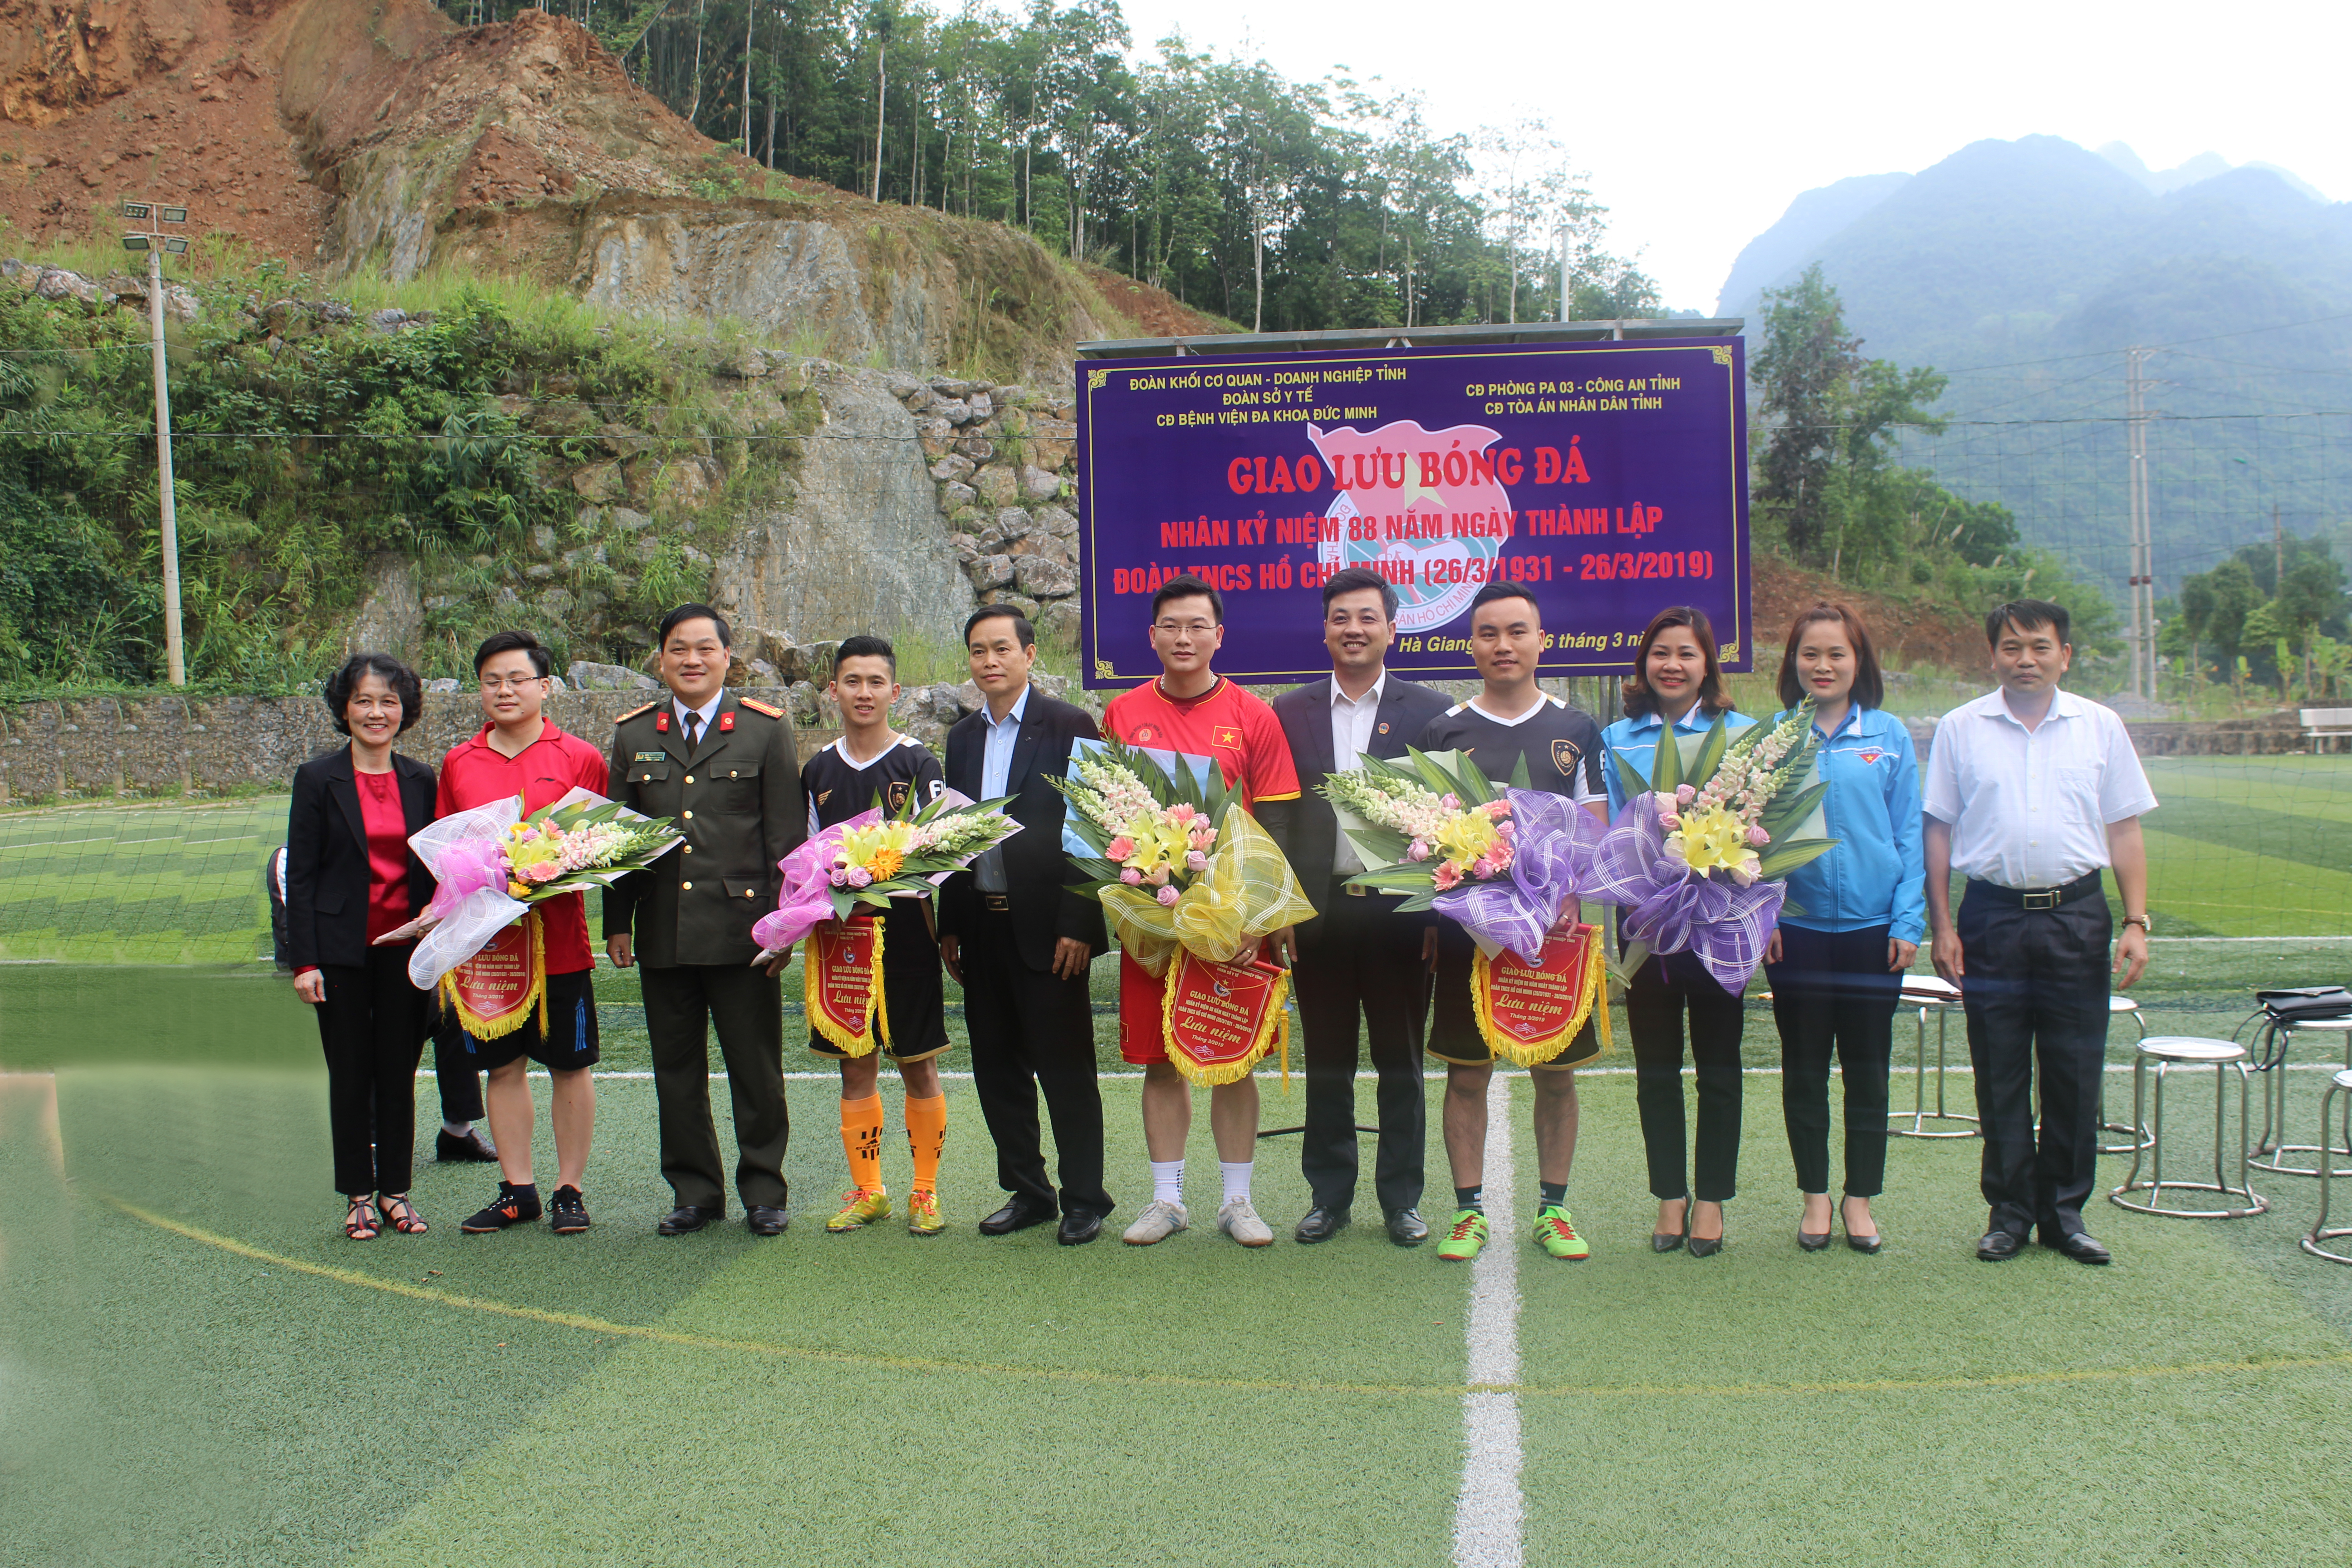 Đ.c Nguyễn Đình Dích, Phó Giám đốc Sở Y tế và lãnh đạo của các đơn vị tặng cờ lưu niệm cho các đội tham gia giao lưu bóng đá